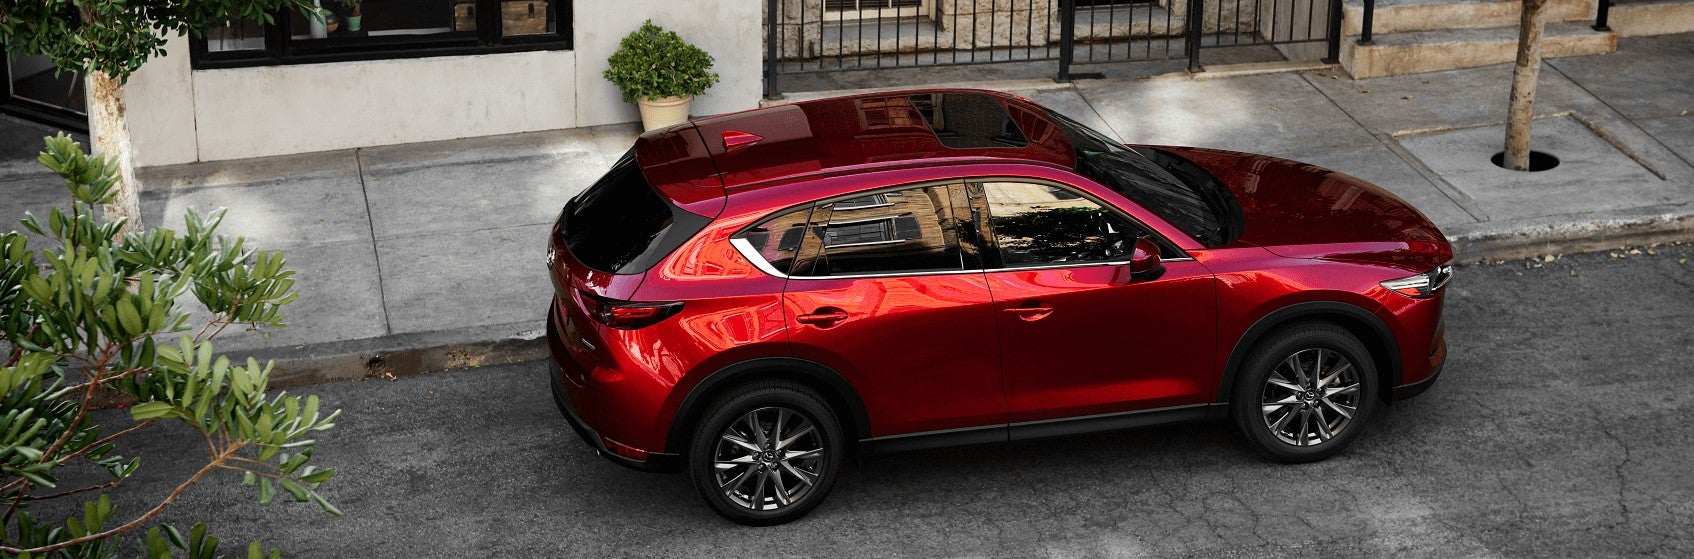 Mazda Lease Deals near Suffolk VA